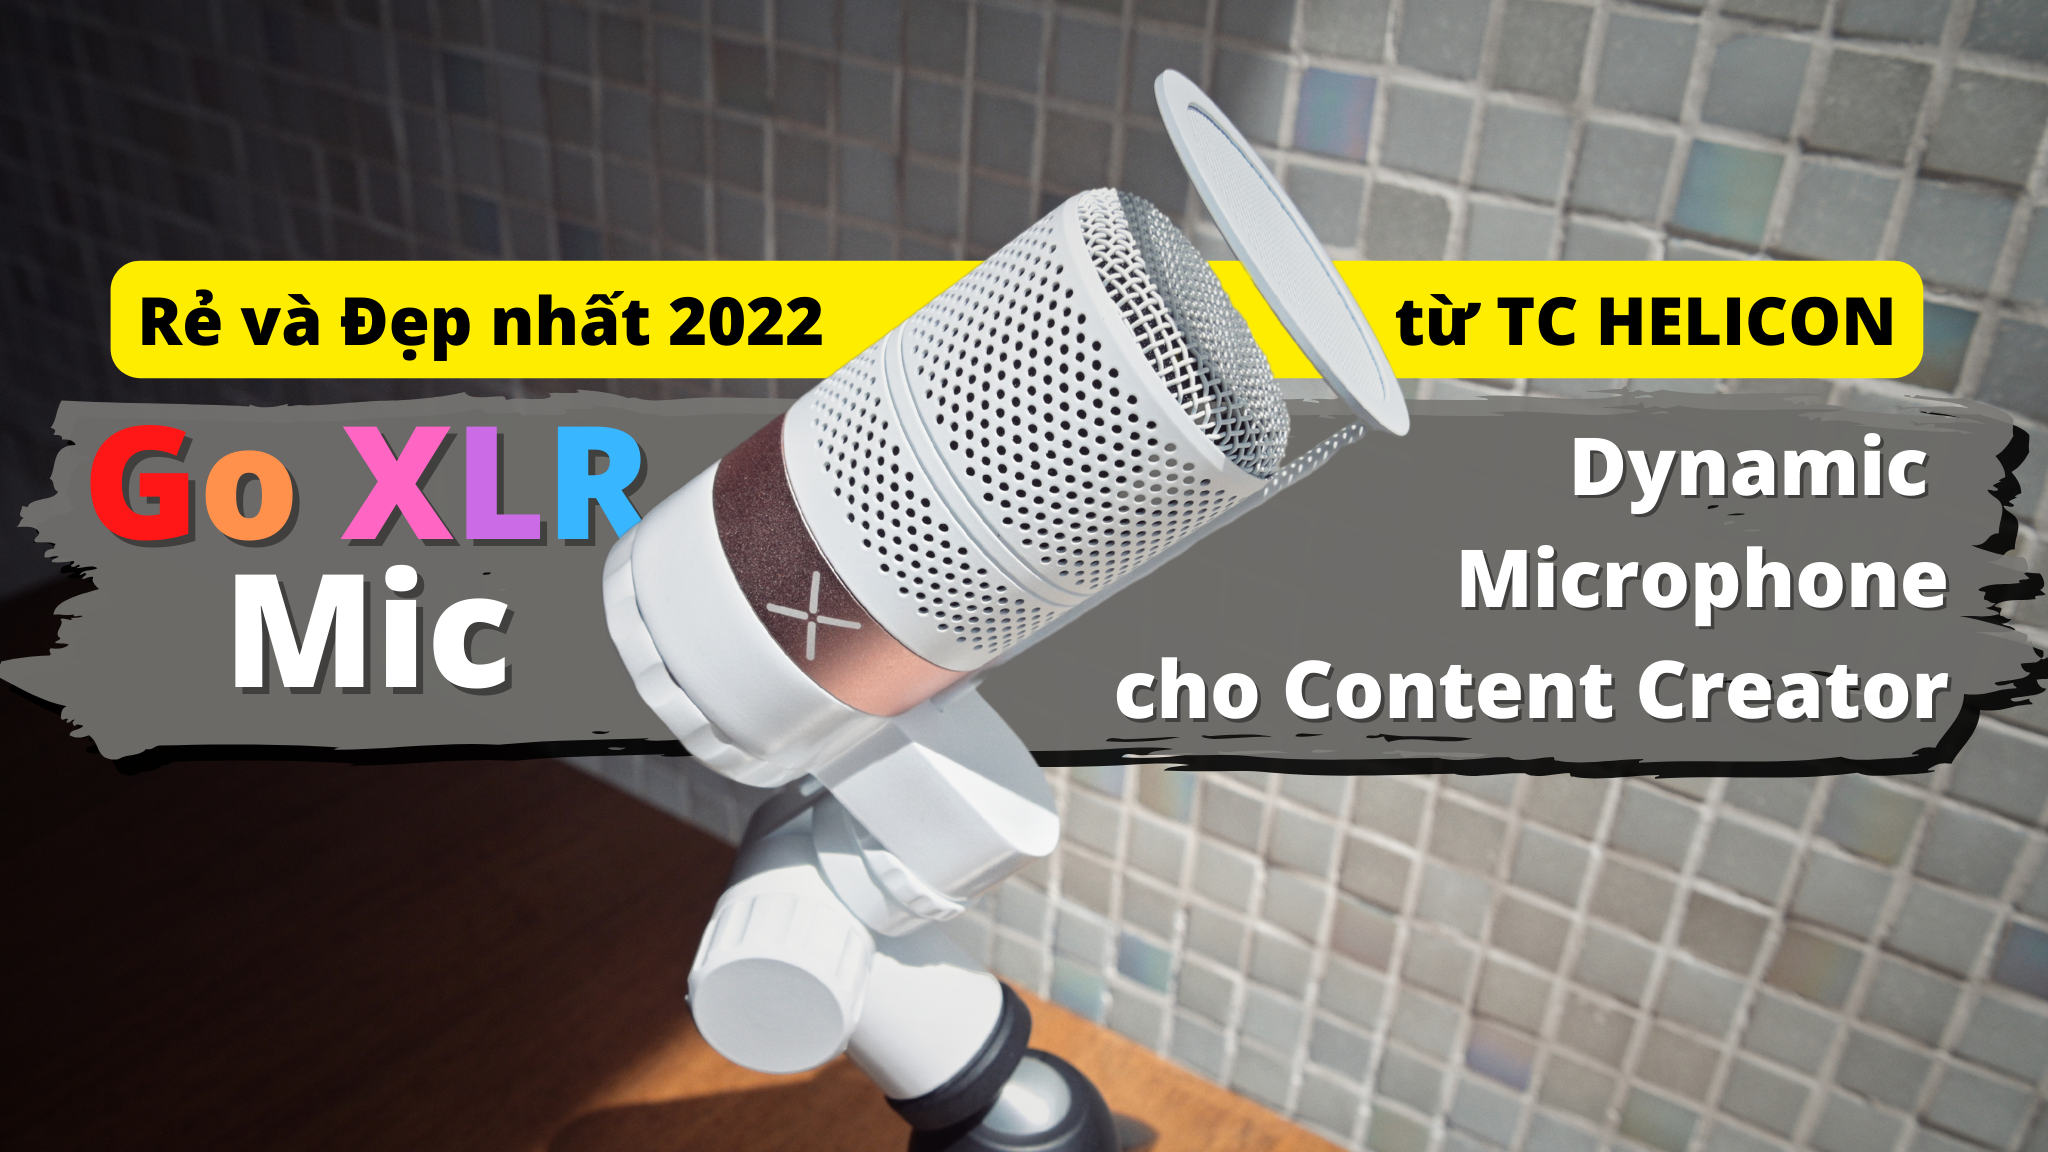 GO-XLR MIC : Lựa chọn Rẻ và Đẹp nhất 2022 cho Content Creator từ TC Helicon